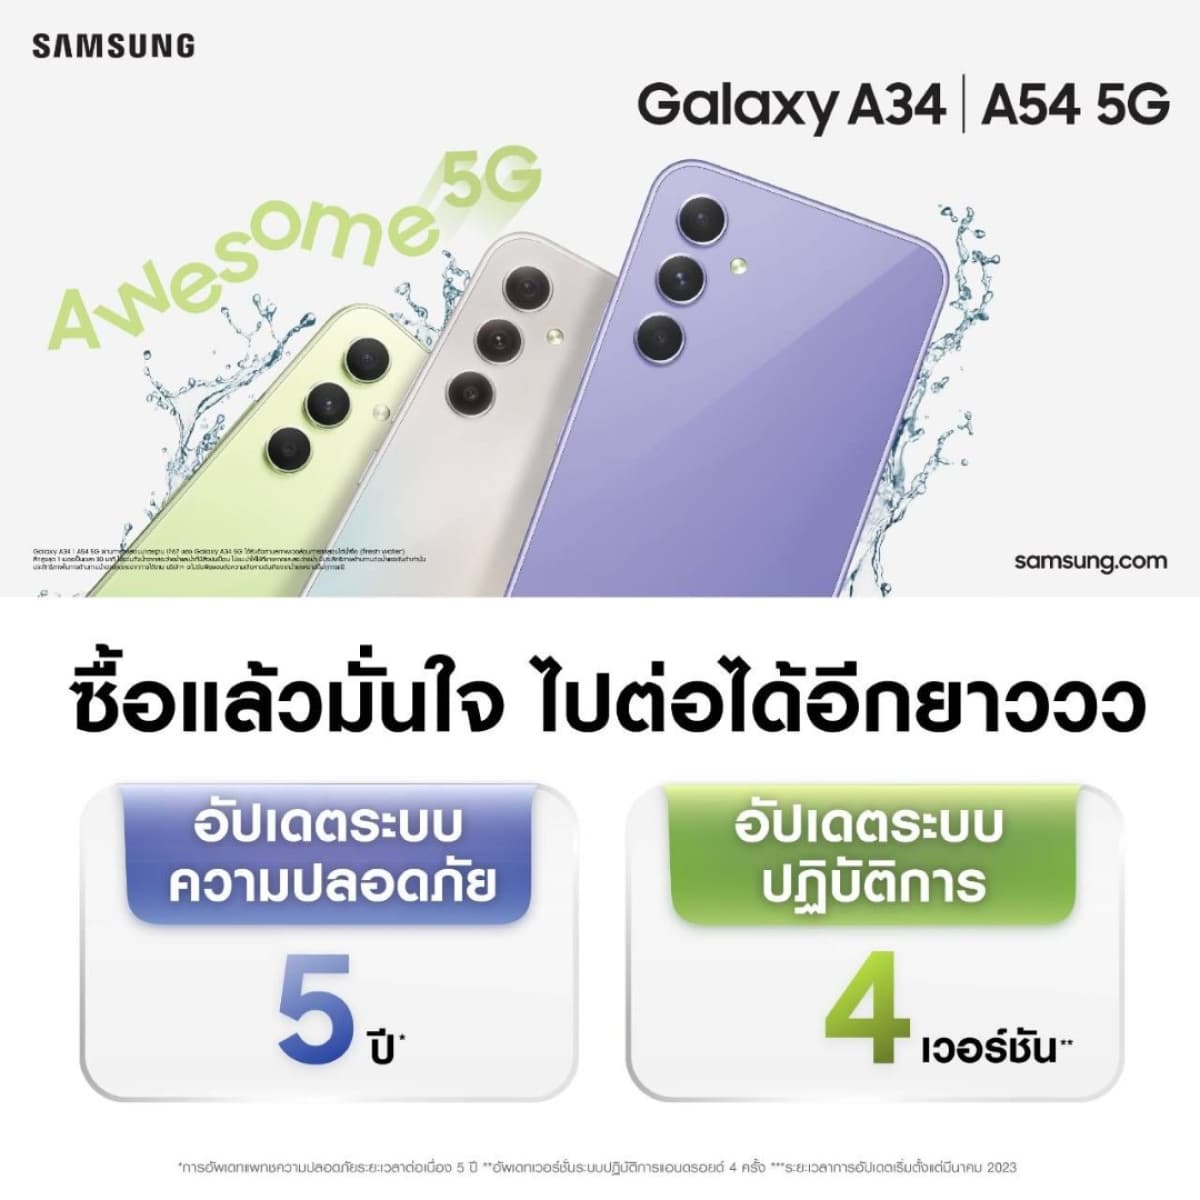 Galaxy A54 ครีเอเตอร์ คอนเทนต์